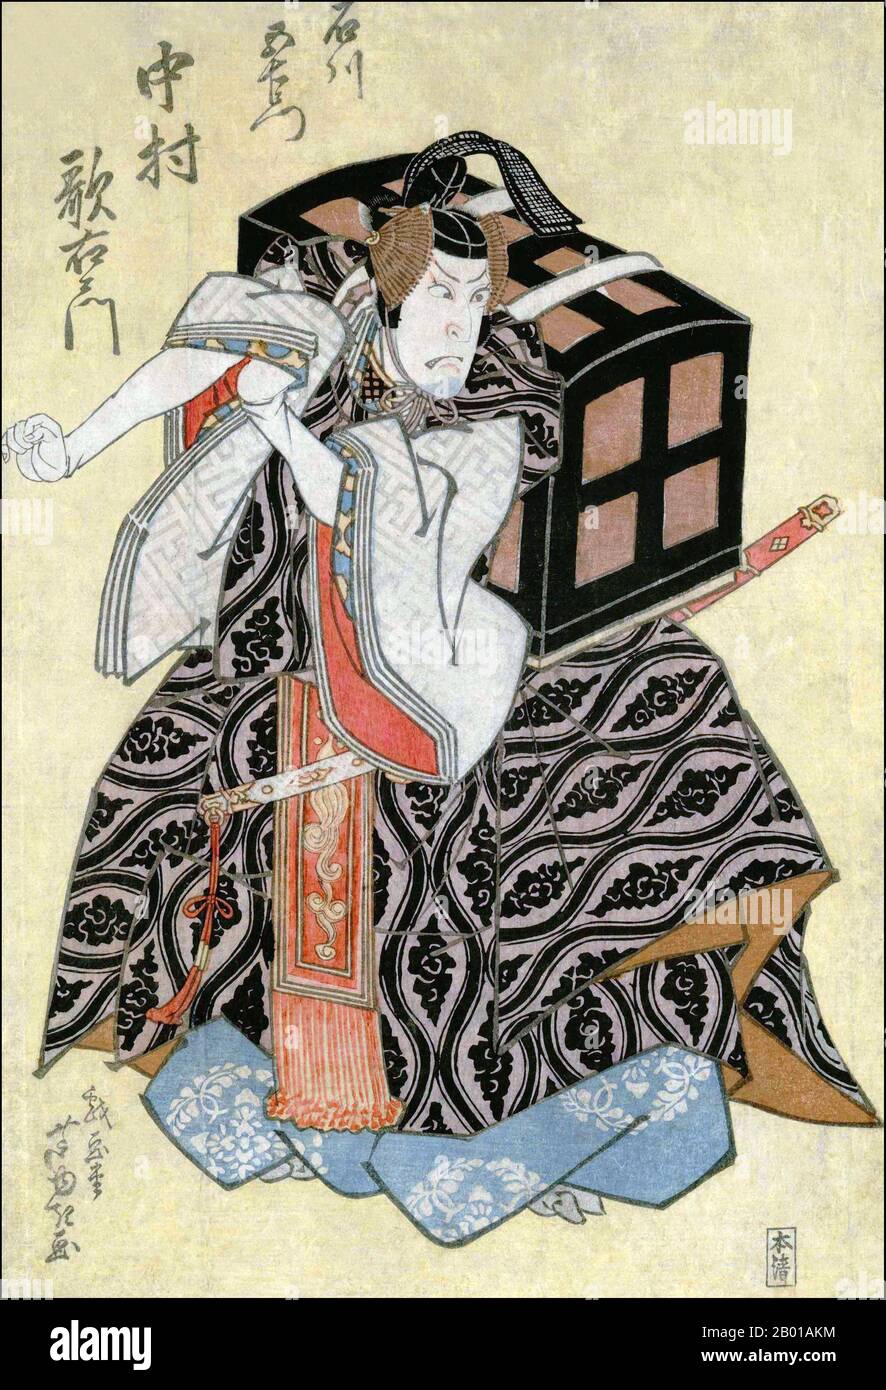 Japon: L'acteur Nakamura Utaemon III jouant Ichikawa Gomon. Imprimé bois Ukiyo-e par Gigado Ashiyuki (fl. 1813-1835), 1826. Gigadō Ashiyuki était un designer d'estampes de bois japonais de style ukiyo-e à Osaka, qui était actif de 1813 à 1833. Il était élève d'Asayama Ashikuni, et était aussi poète haïku. Ashiyuki est surtout connu pour ses tirages de taille ōban (environ 14 x 10 pouces ou 36 x 25 centimètres) d'acteurs kabuki, bien qu'il ait également illustré des livres. Banque D'Images